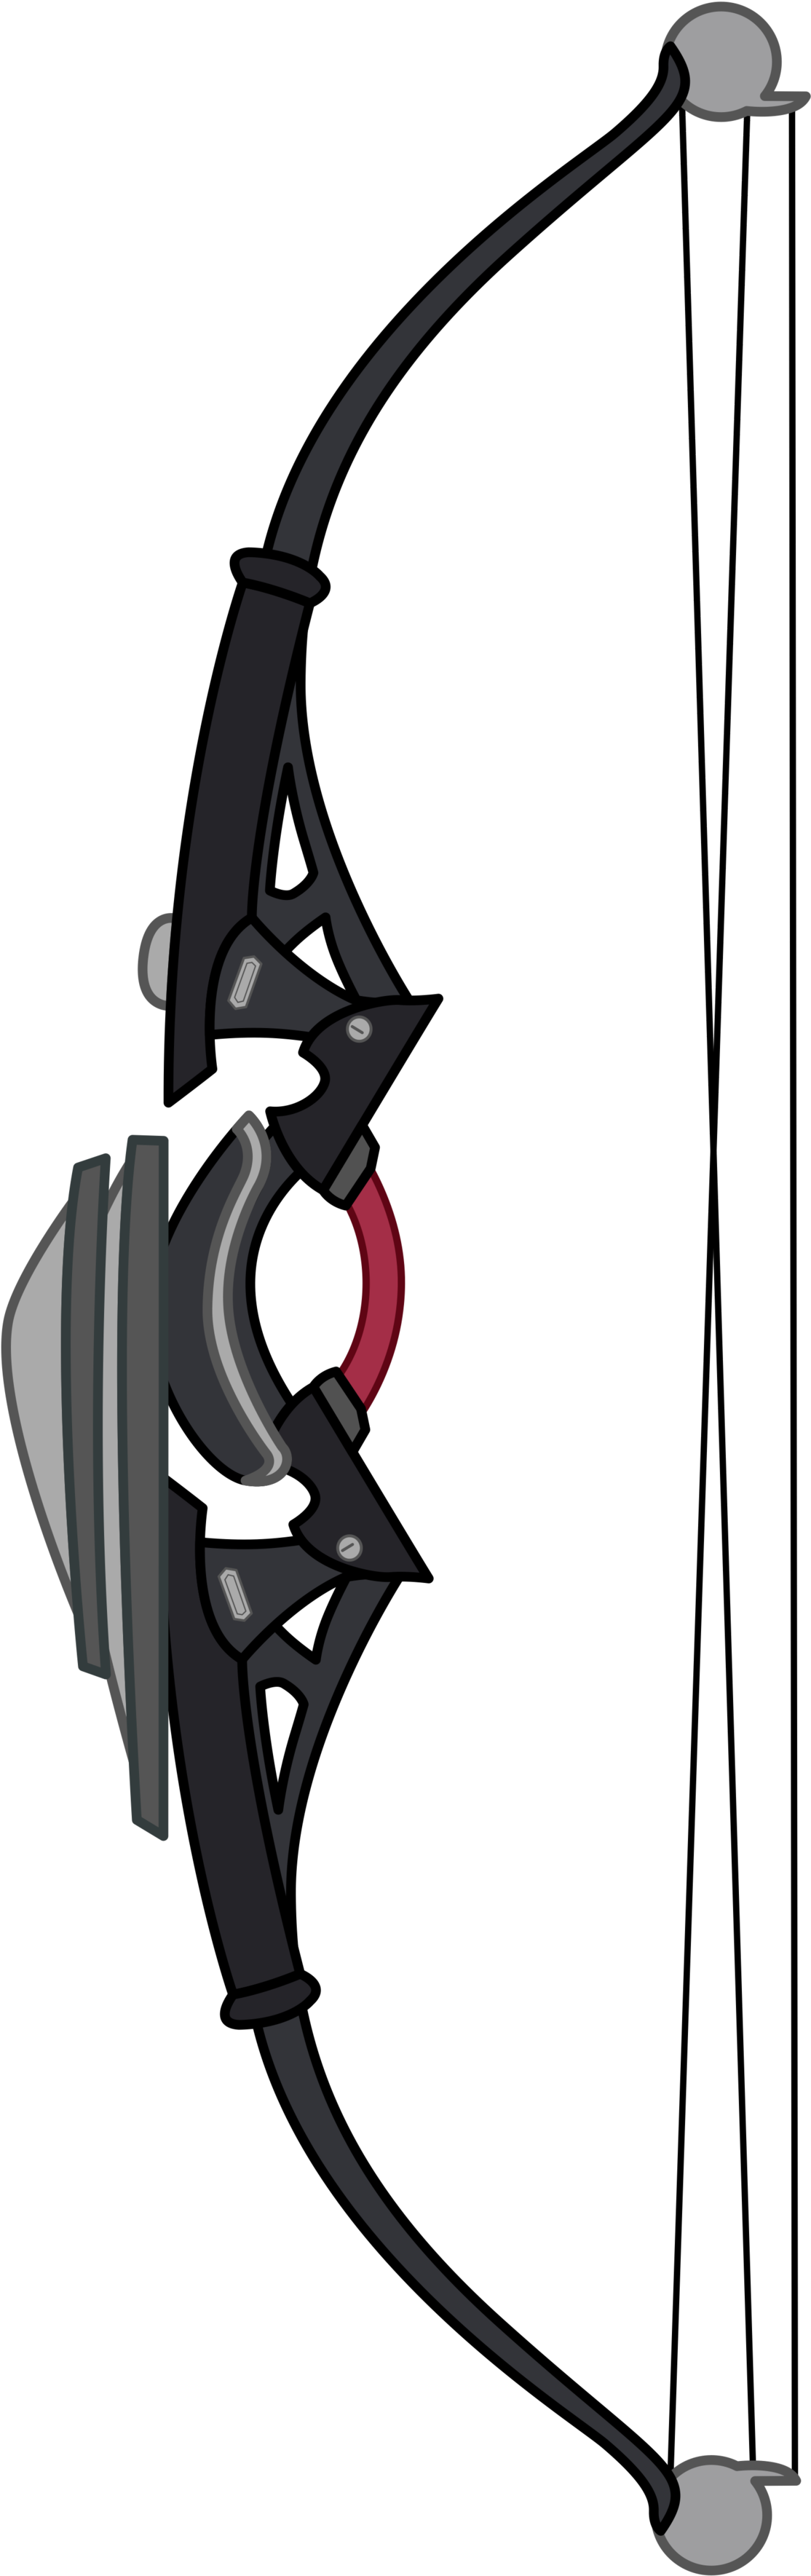 Ninja Gaiden 3 Weapon - Ninja Gaiden (1600x3600)